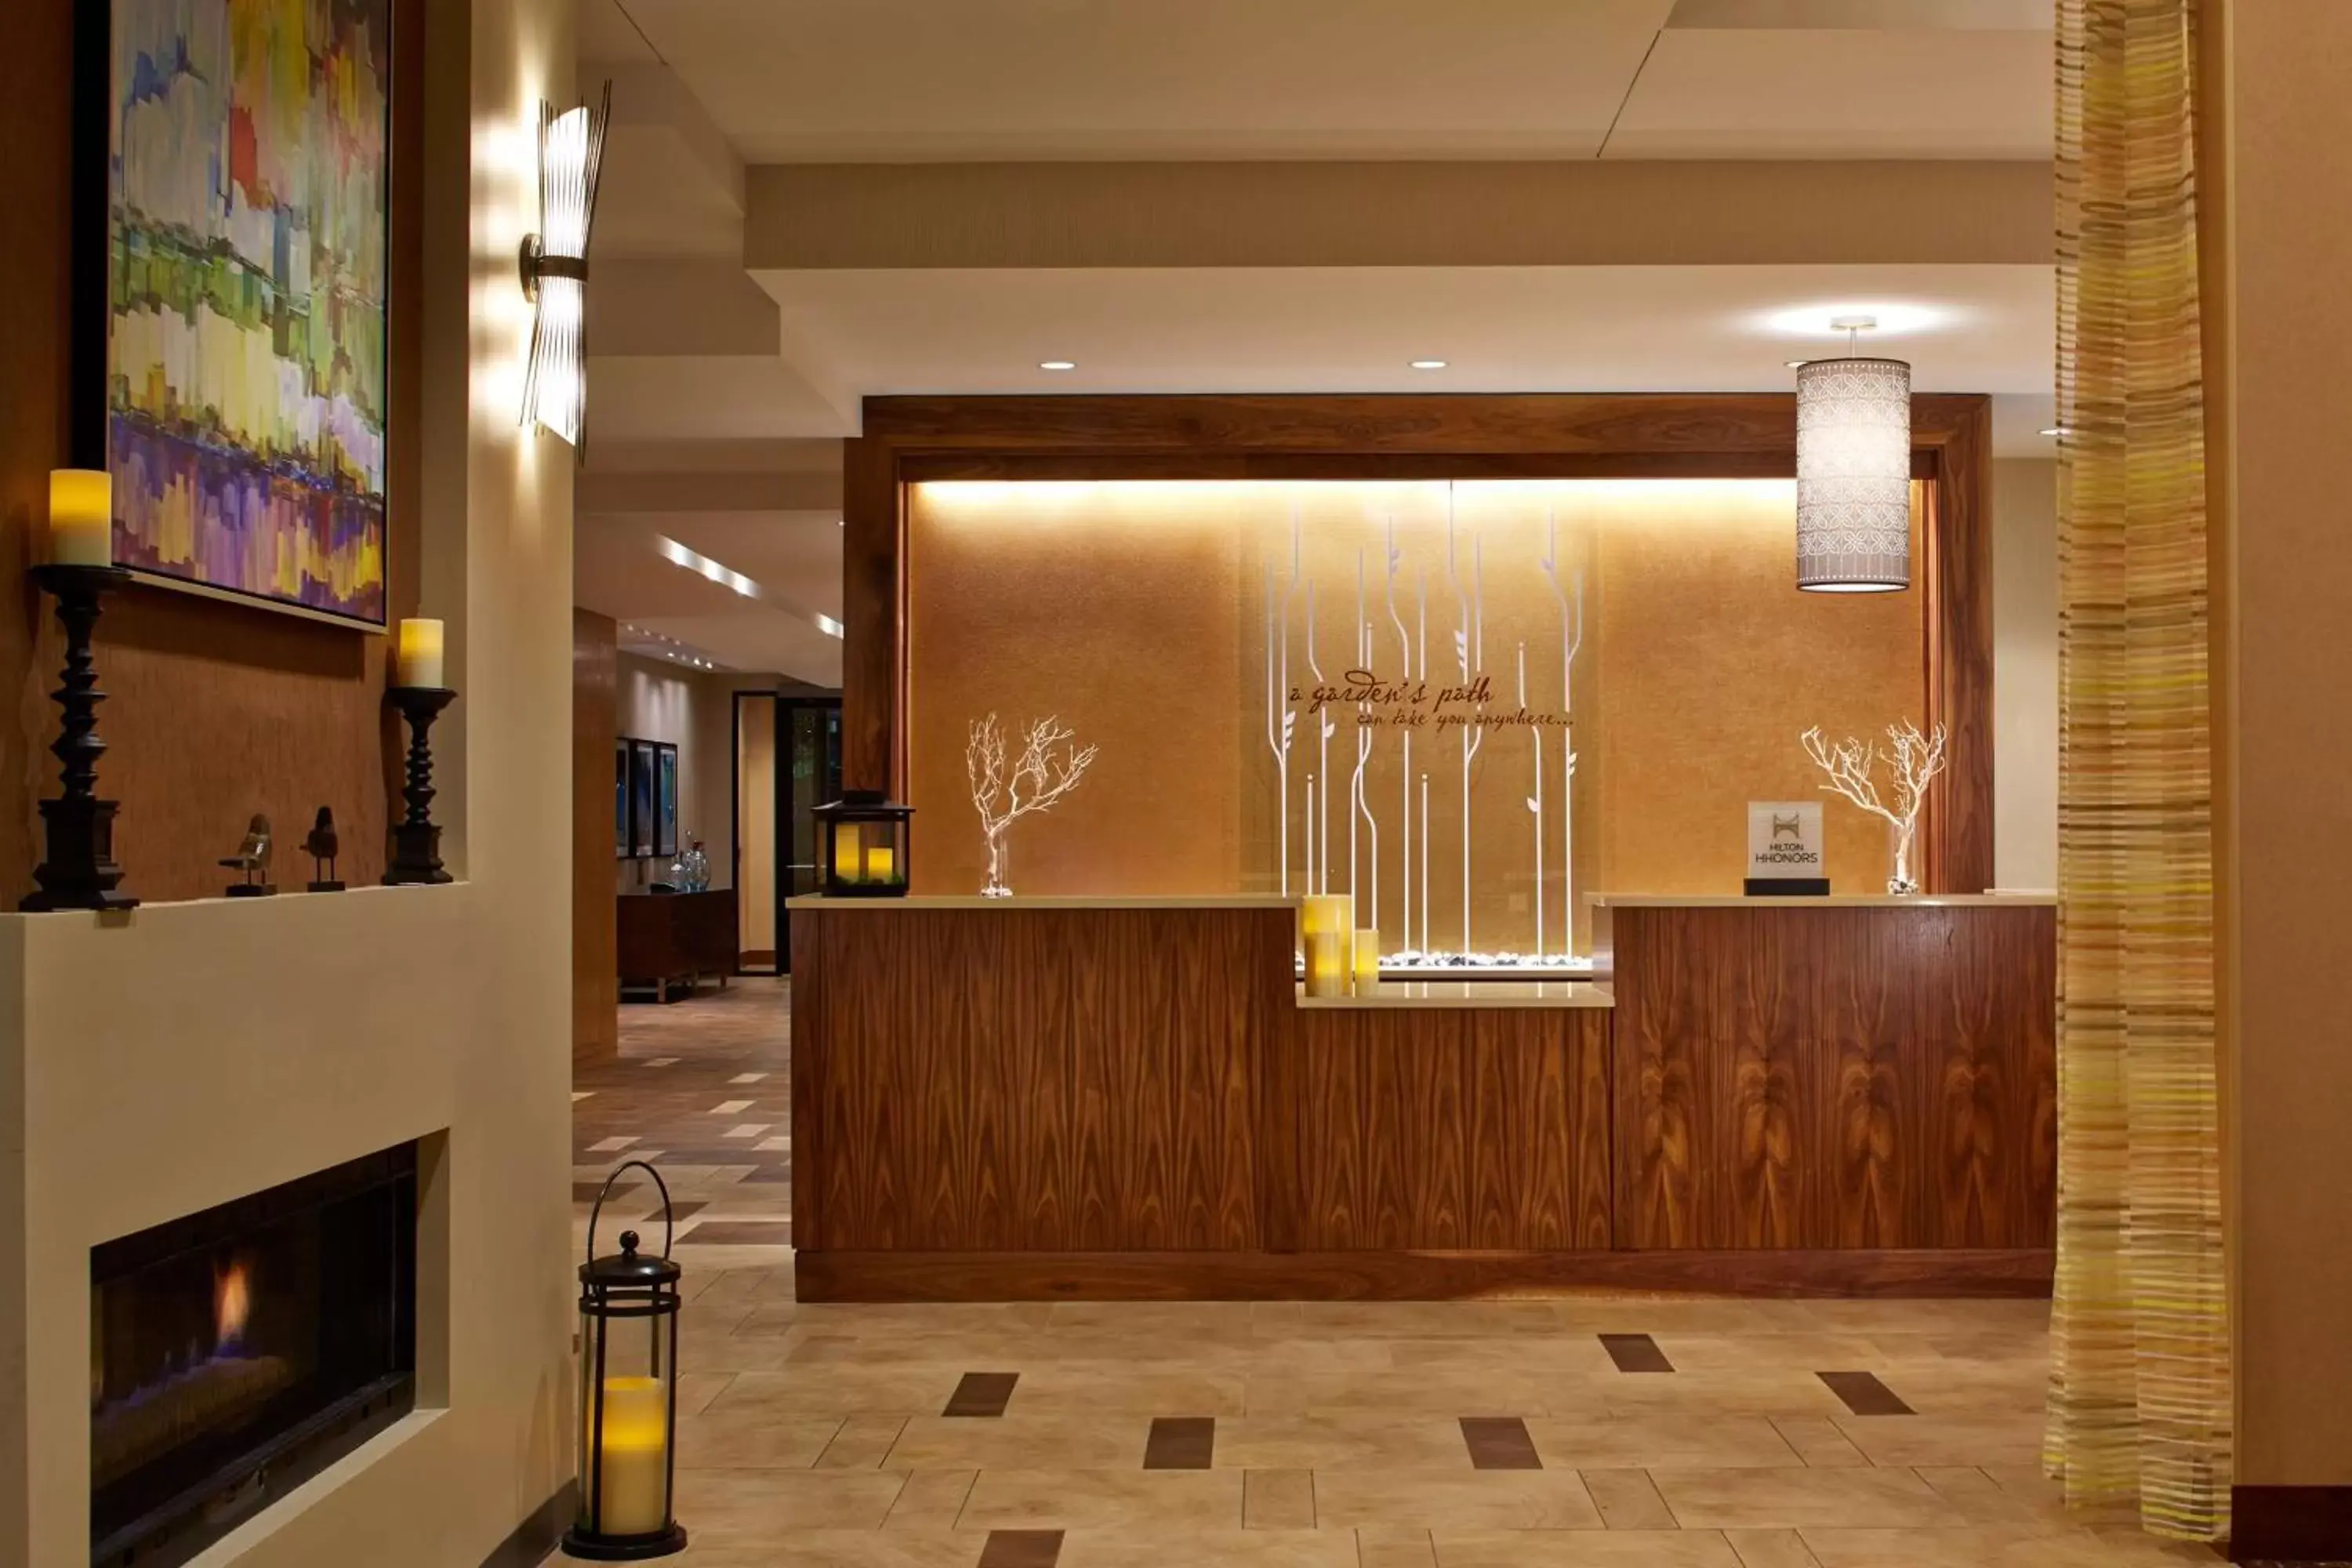 Lobby or reception, Lobby/Reception in Hilton Garden Inn Boston/Marlborough